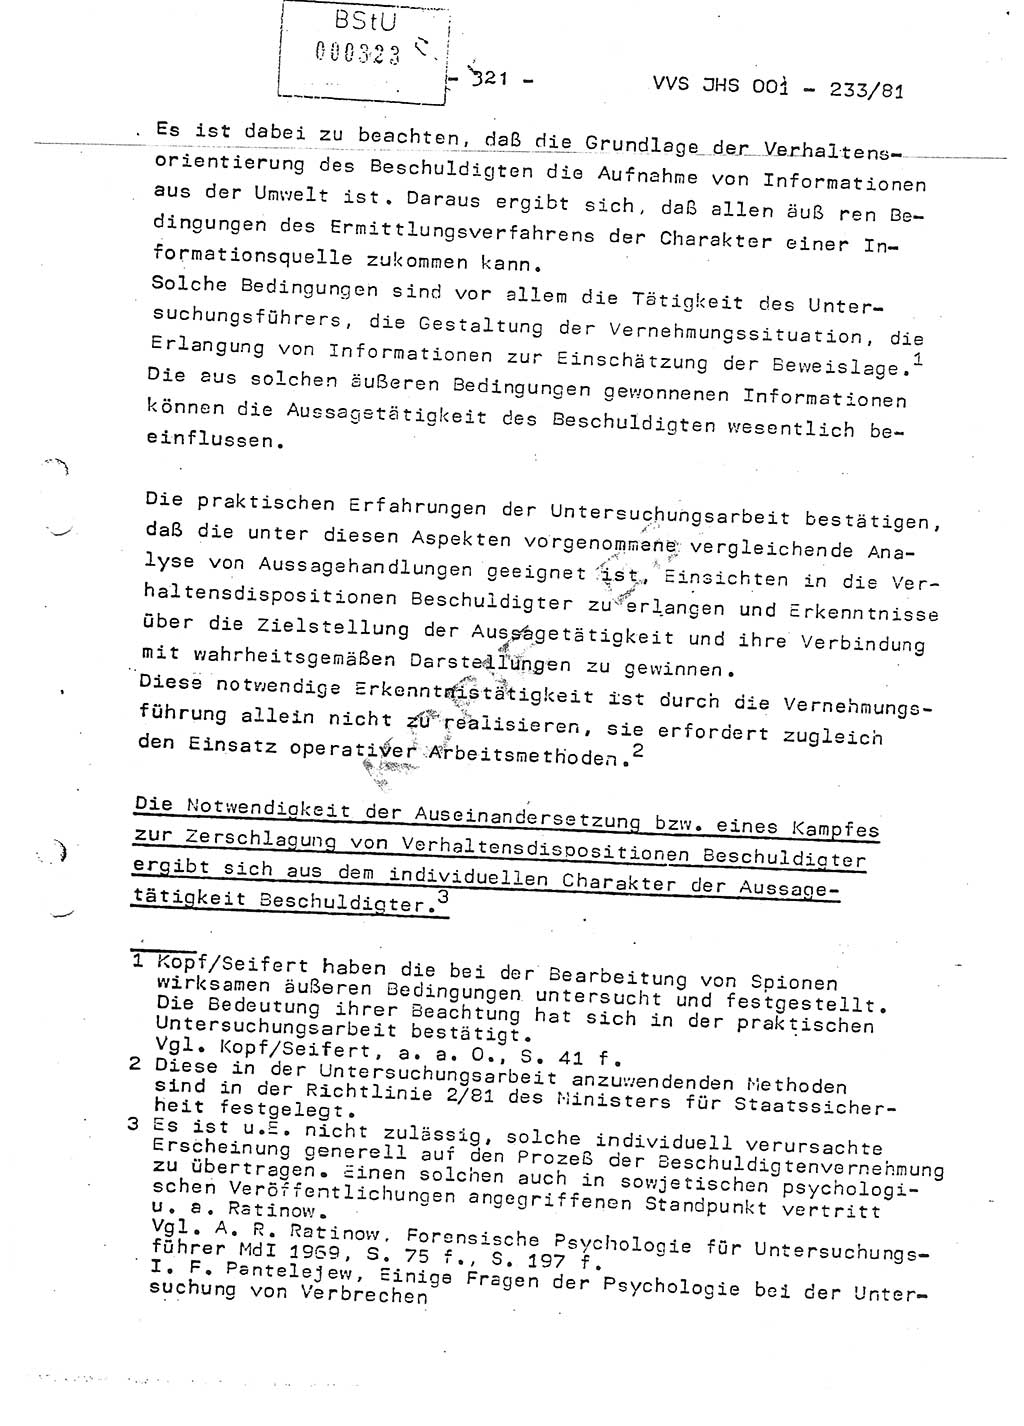 Dissertation Oberstleutnant Horst Zank (JHS), Oberstleutnant Dr. Karl-Heinz Knoblauch (JHS), Oberstleutnant Gustav-Adolf Kowalewski (HA Ⅸ), Oberstleutnant Wolfgang Plötner (HA Ⅸ), Ministerium für Staatssicherheit (MfS) [Deutsche Demokratische Republik (DDR)], Juristische Hochschule (JHS), Vertrauliche Verschlußsache (VVS) o001-233/81, Potsdam 1981, Blatt 321 (Diss. MfS DDR JHS VVS o001-233/81 1981, Bl. 321)